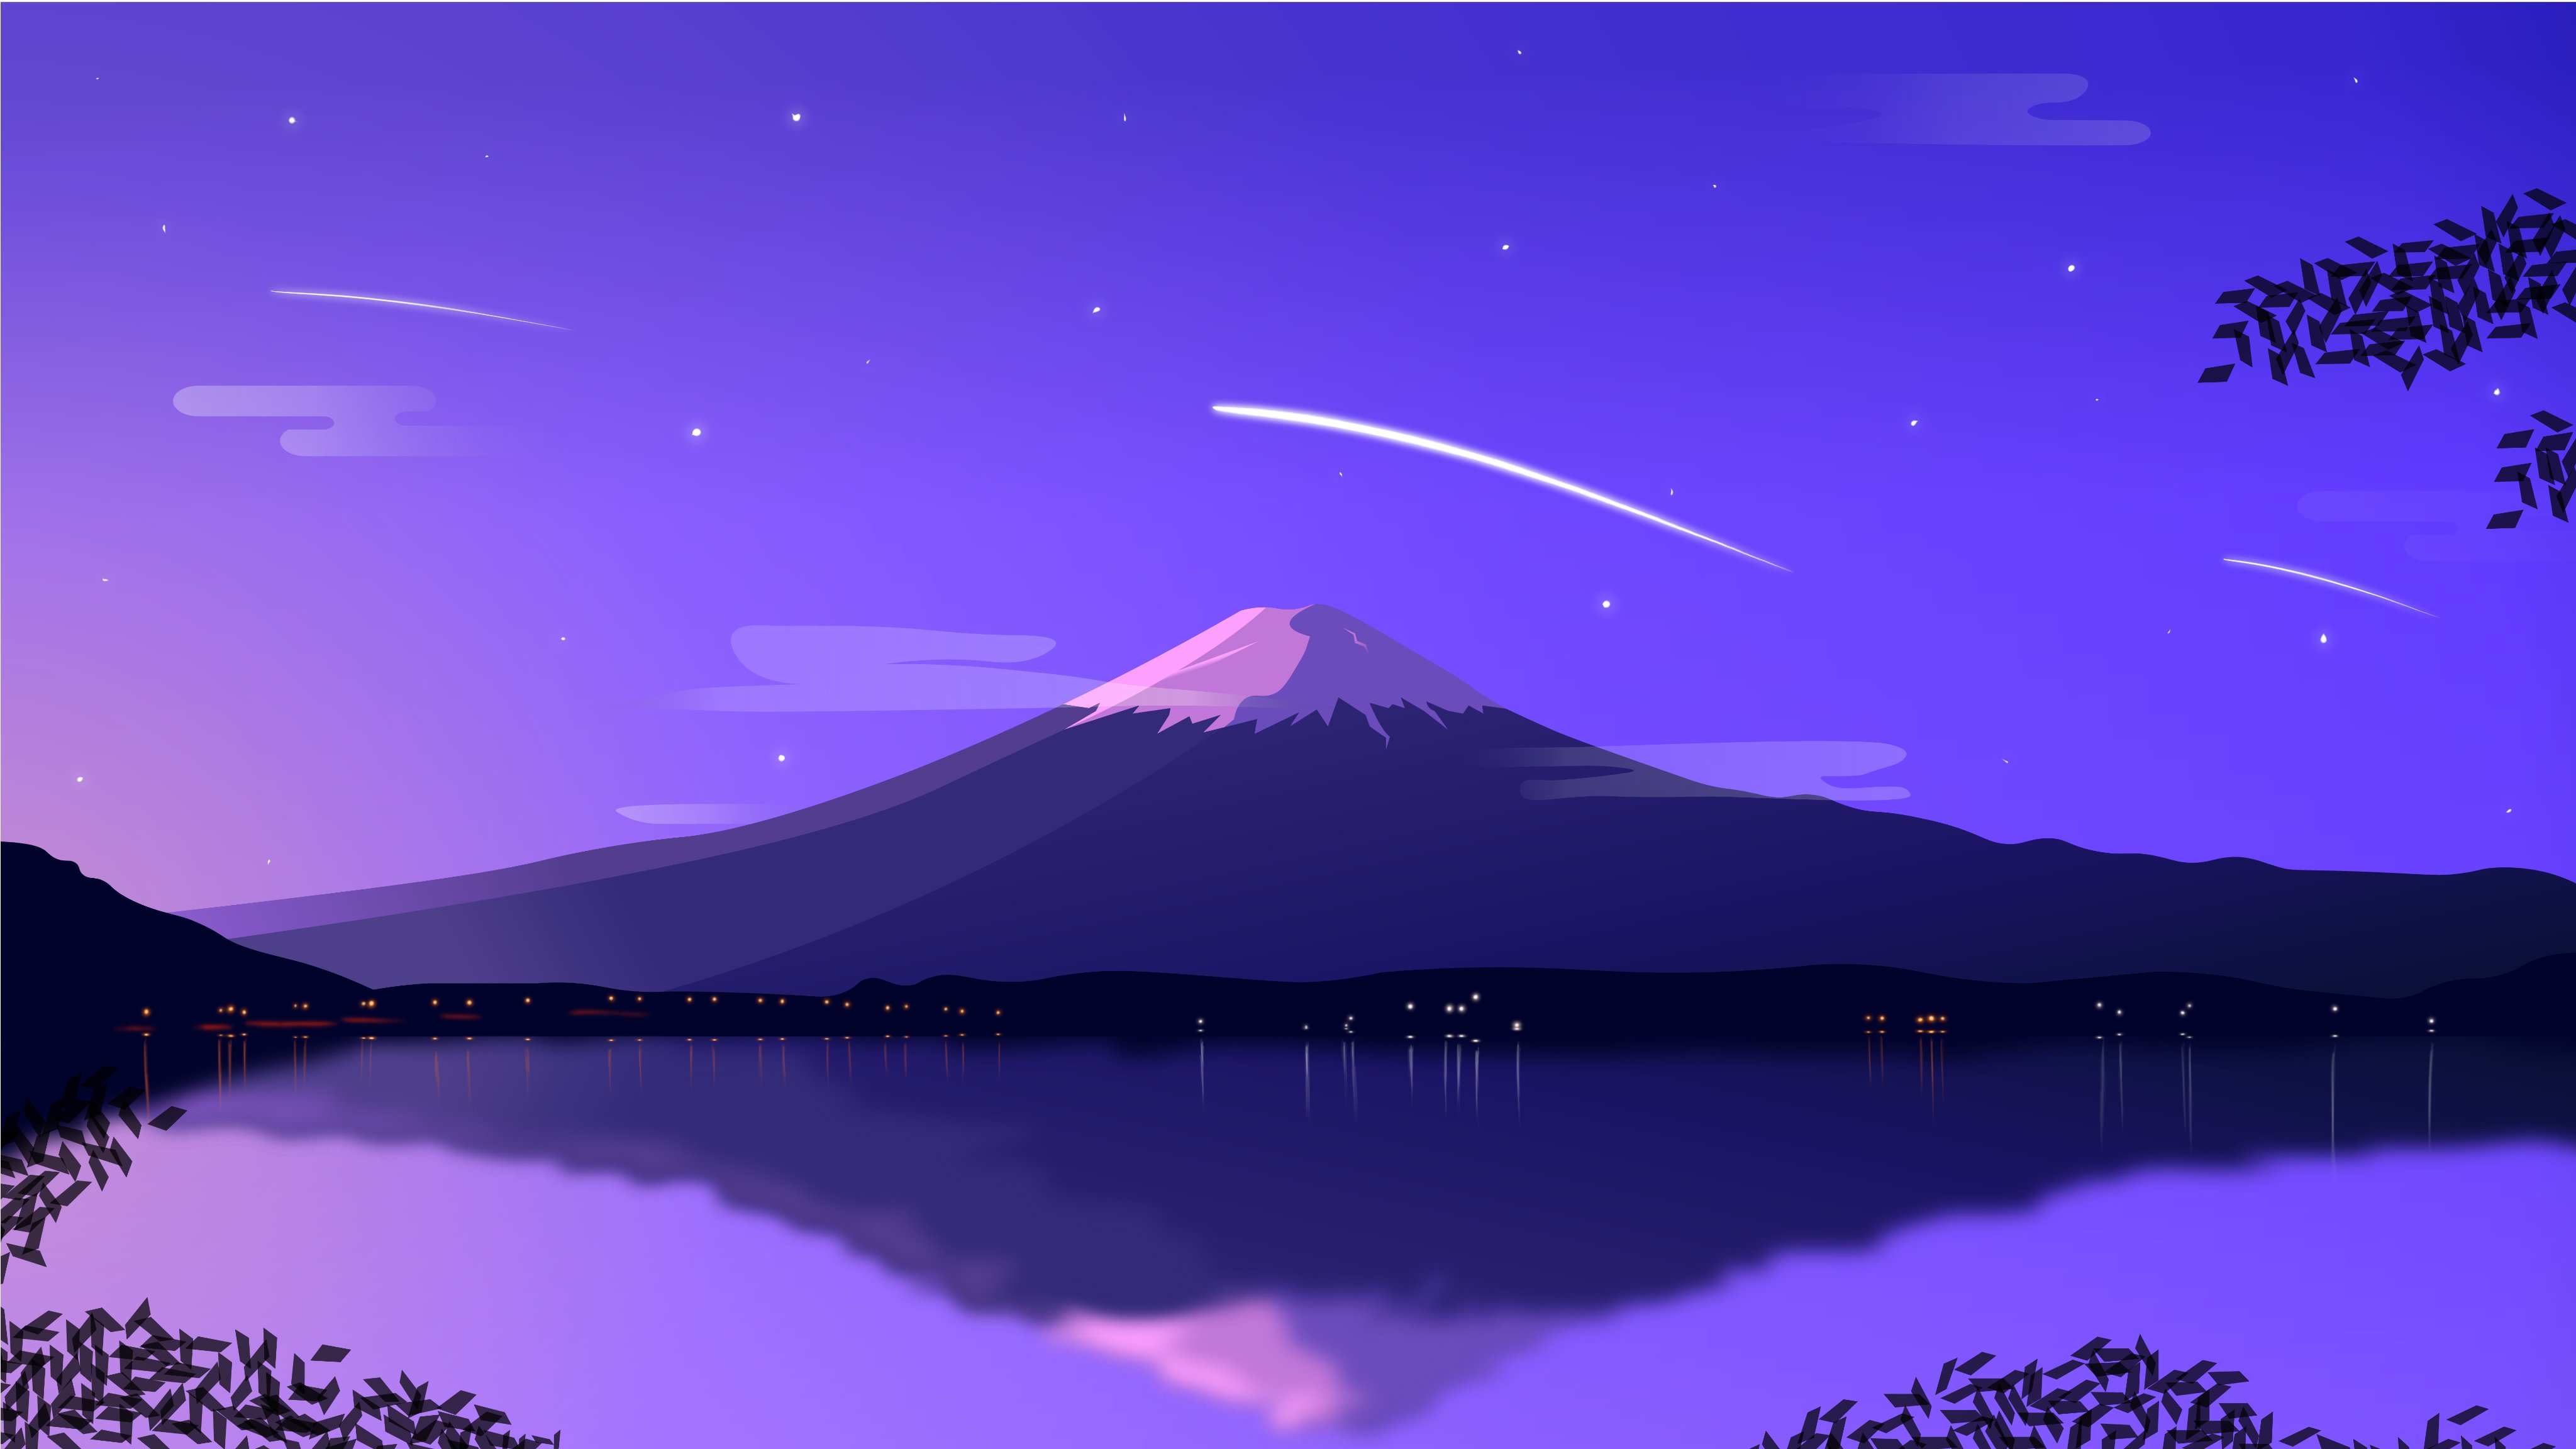 Japan Mount Fuji Wallpaper mtfuji japan travel iphone wallpaper   美しい風景写真 美しい風景 風景